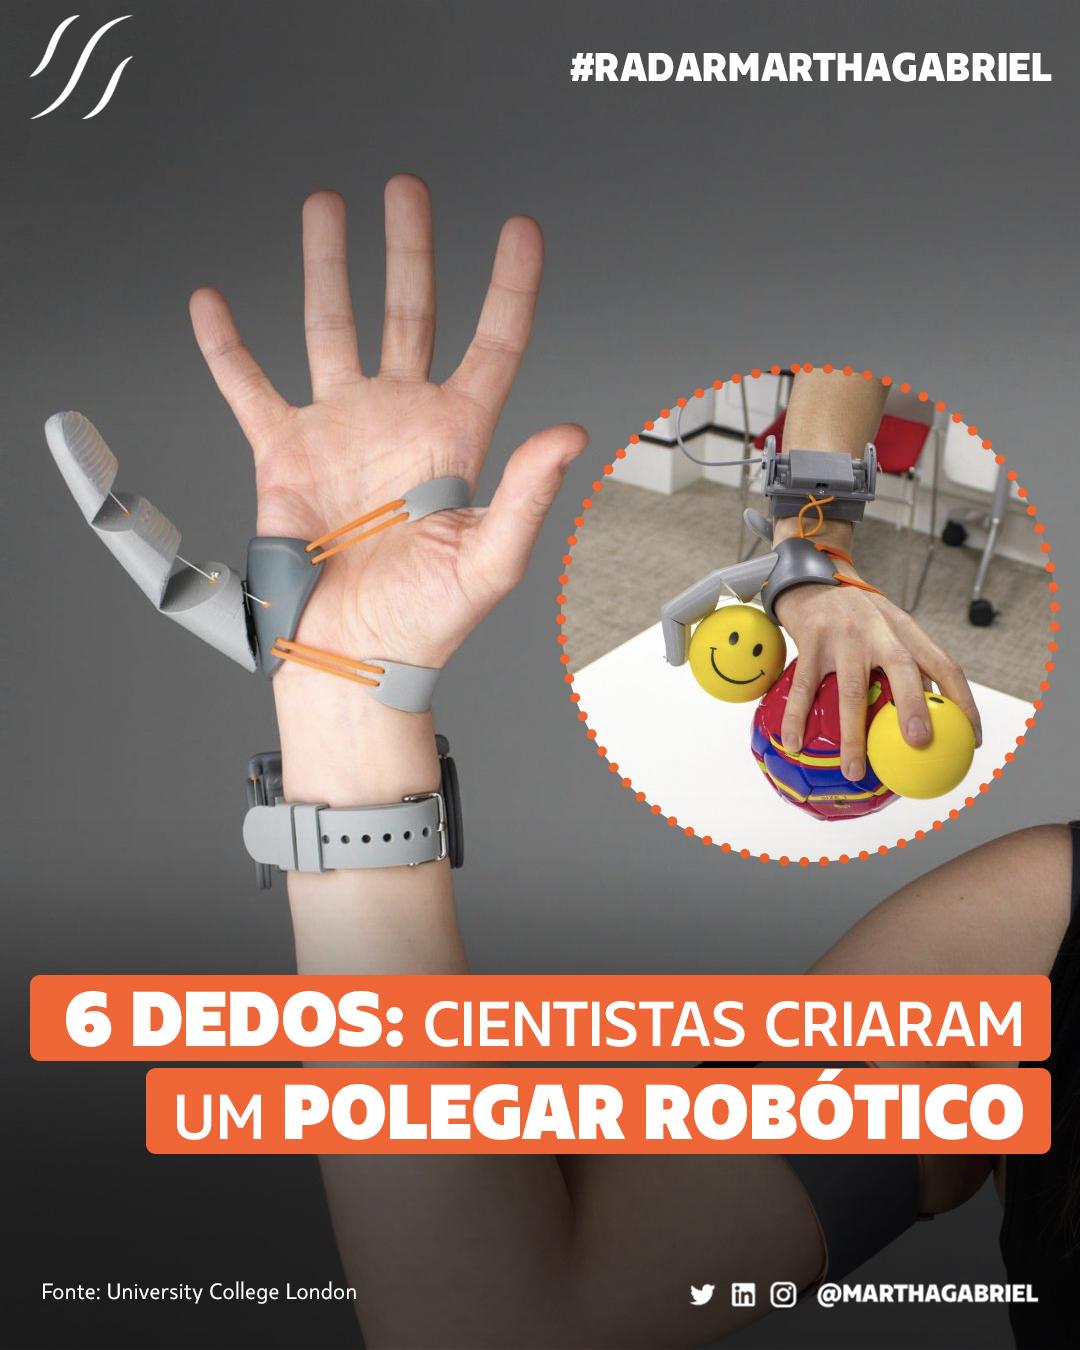 6 dedos: cientistas criaram um polegar robótico